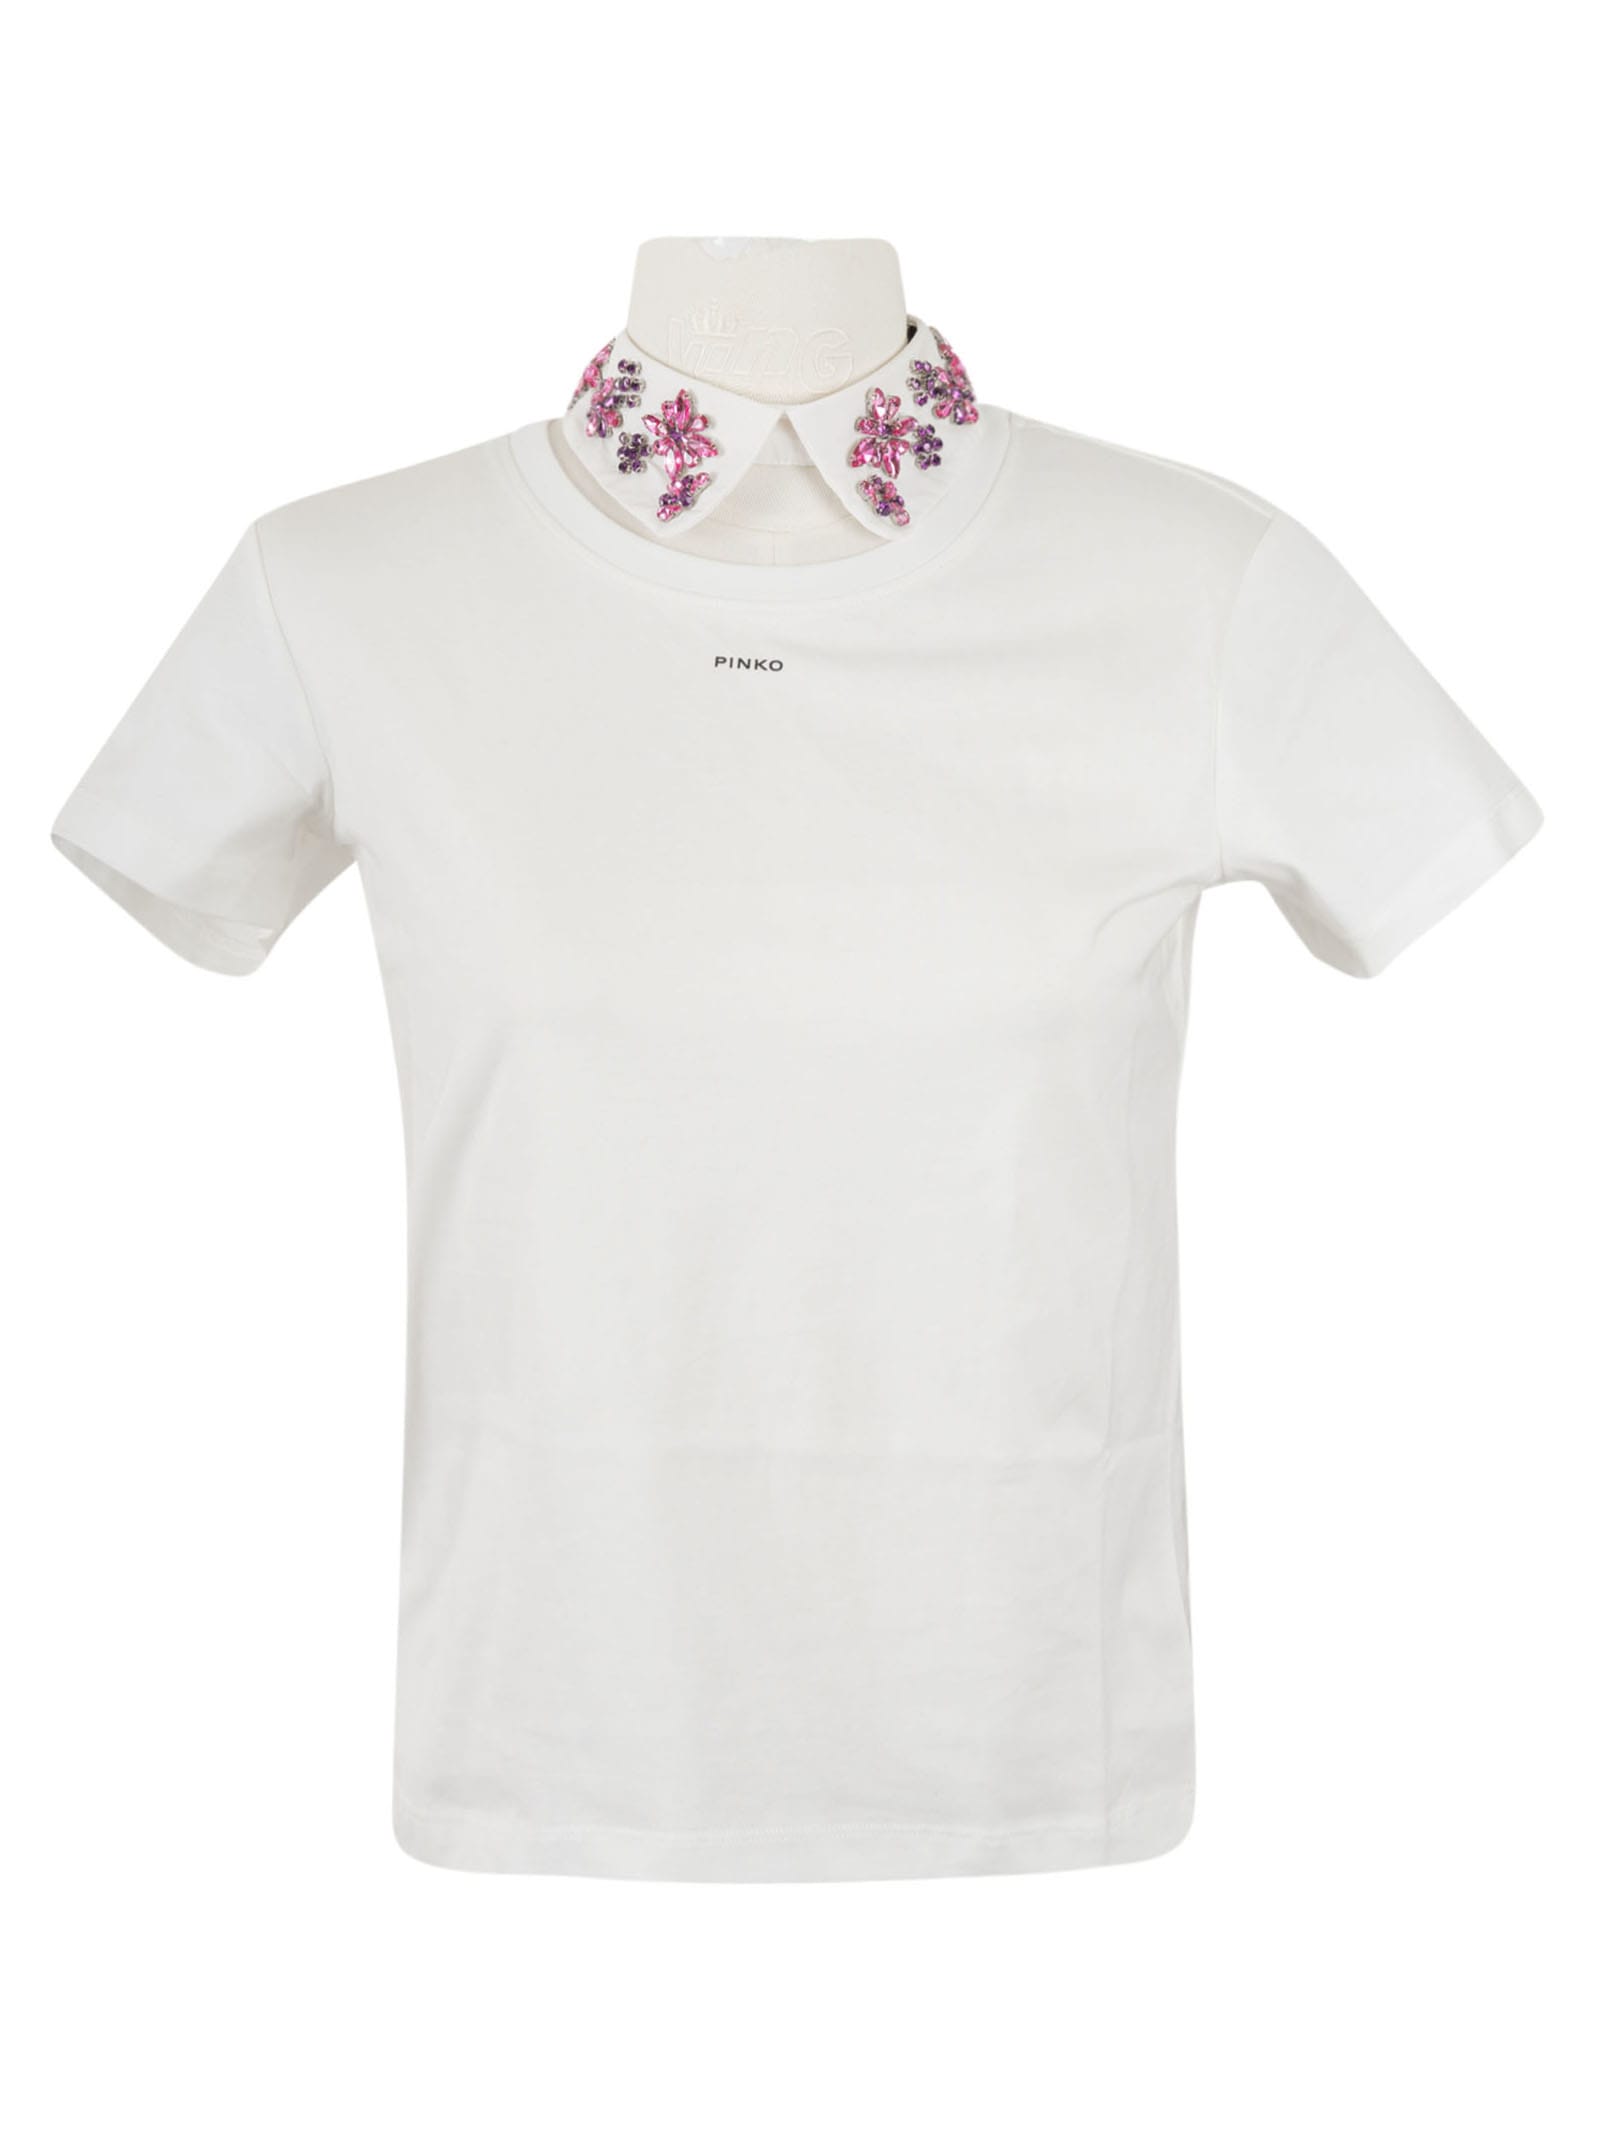 Pinko Floral Crystal Embellished T-shirt